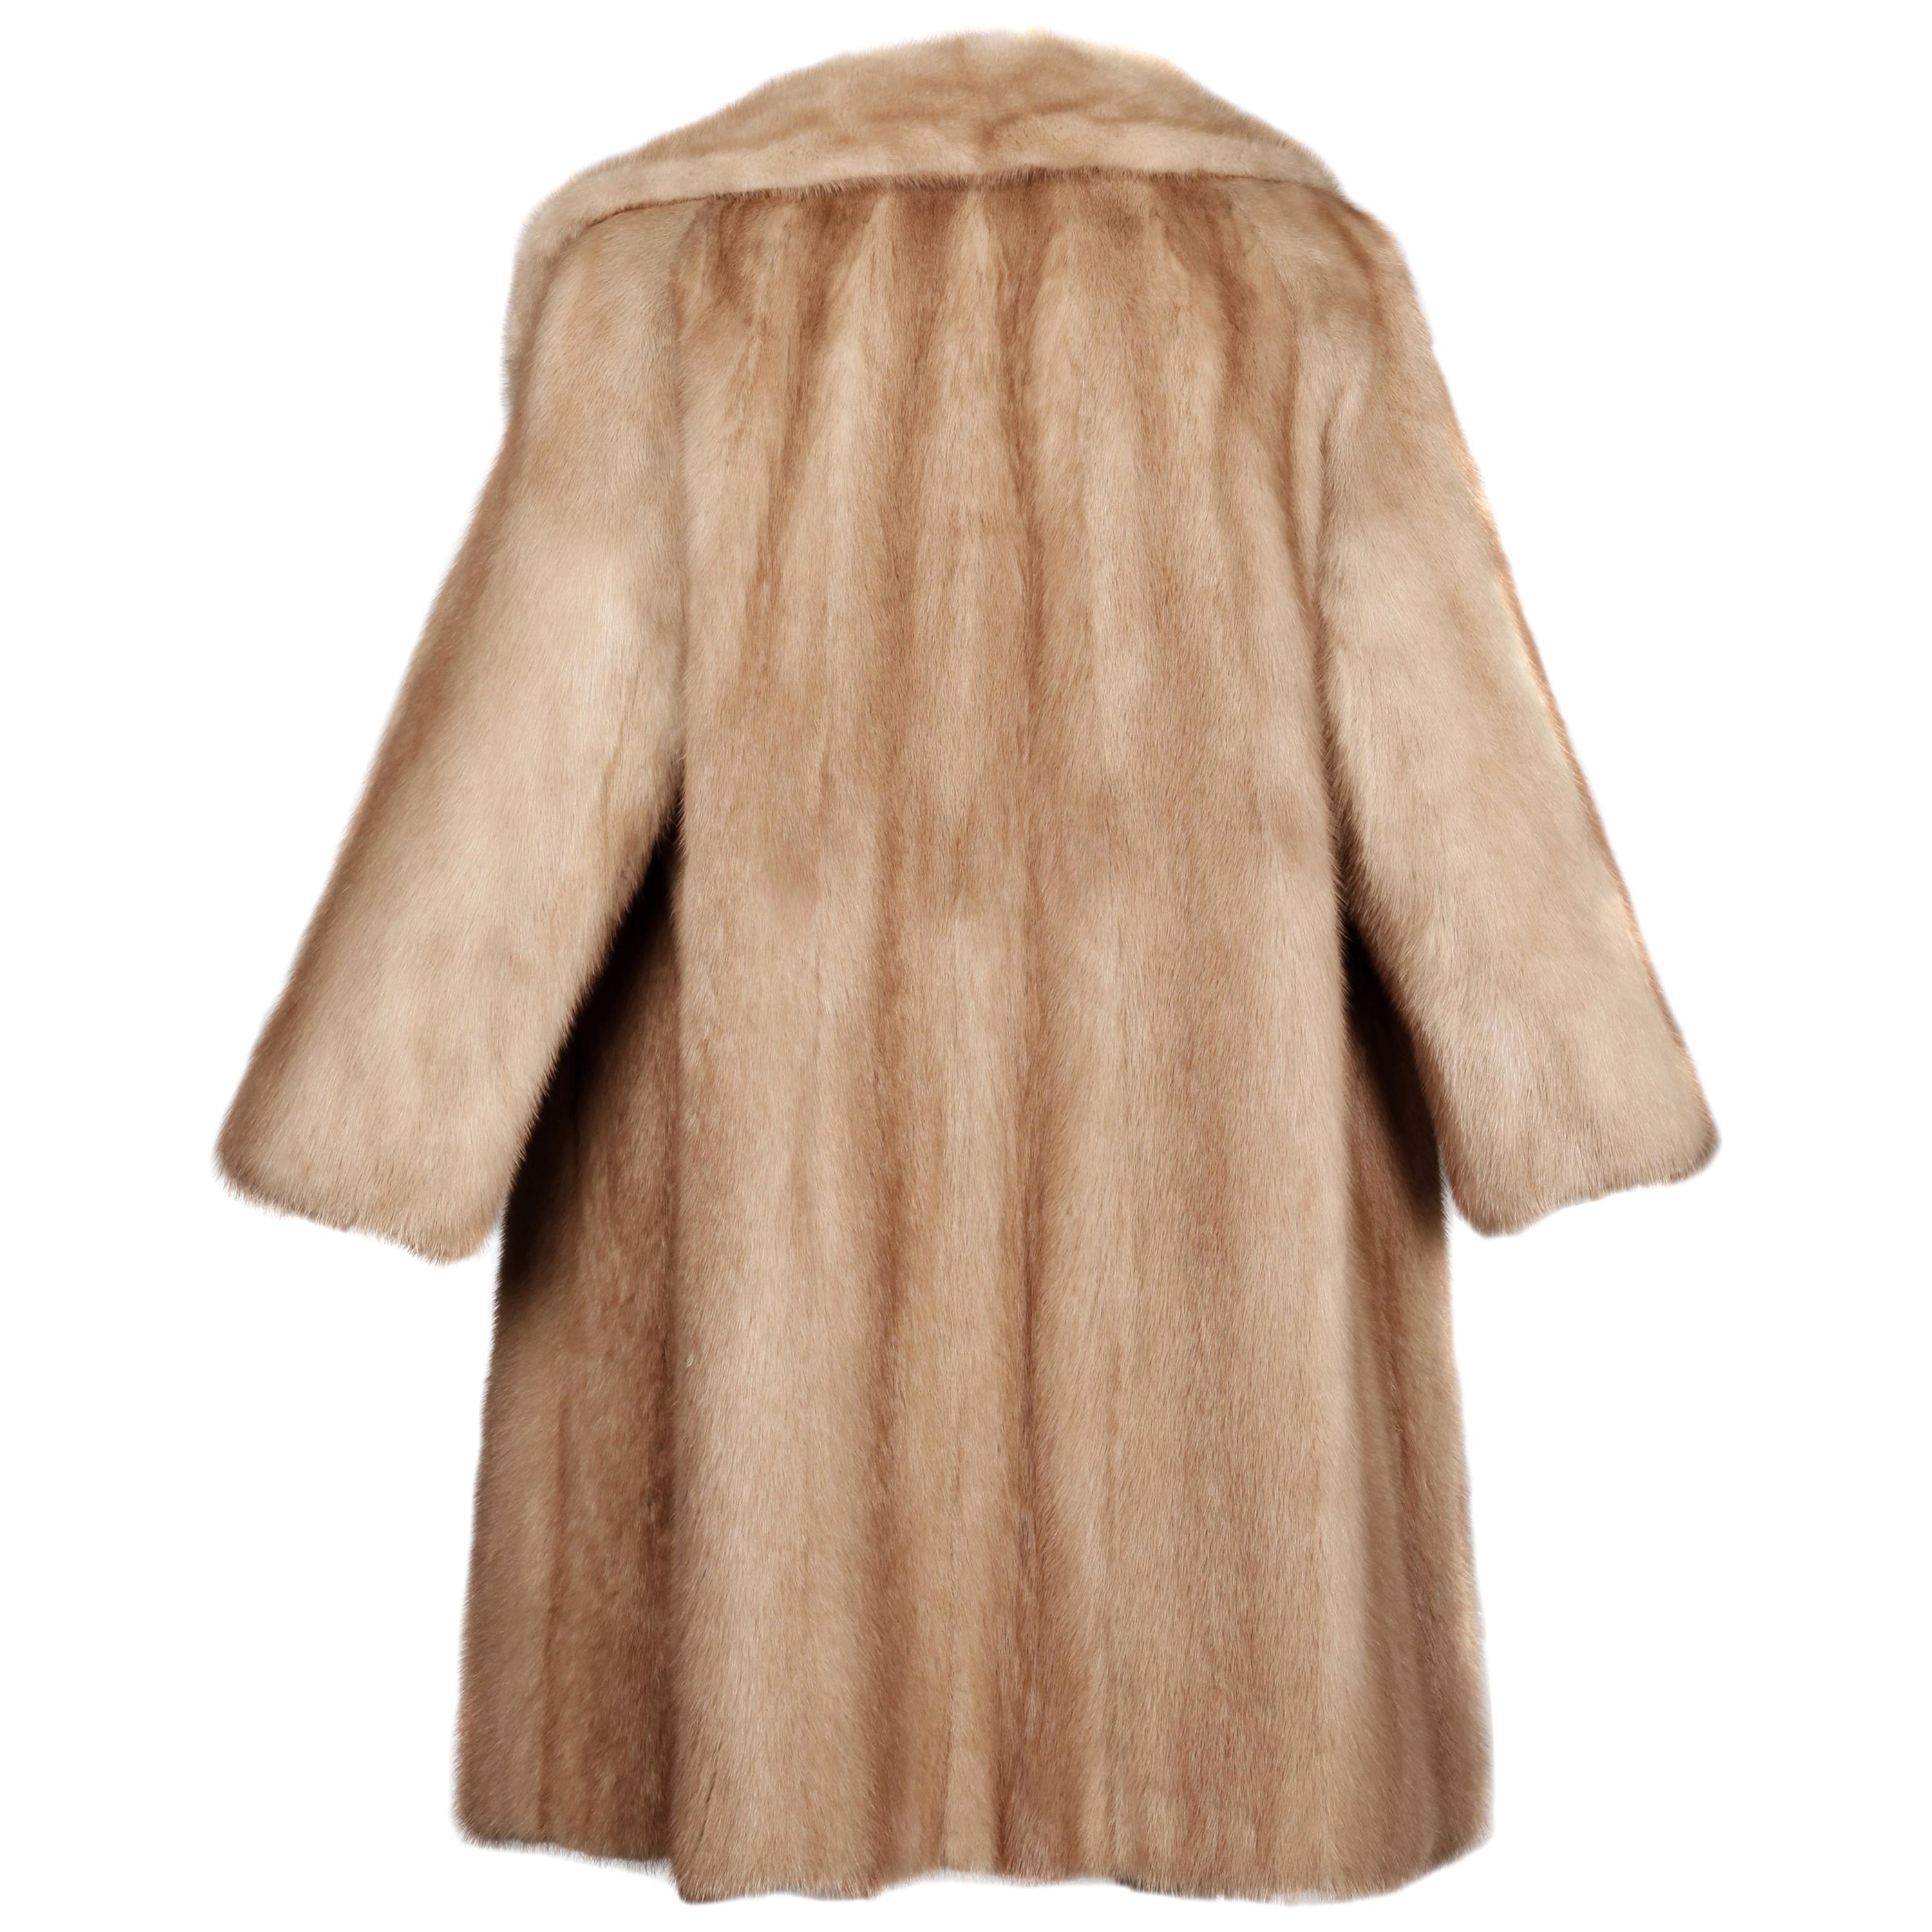 1960s Vintage Autumn Haze or Beige Mink Fur Coat with Pop Up Collar